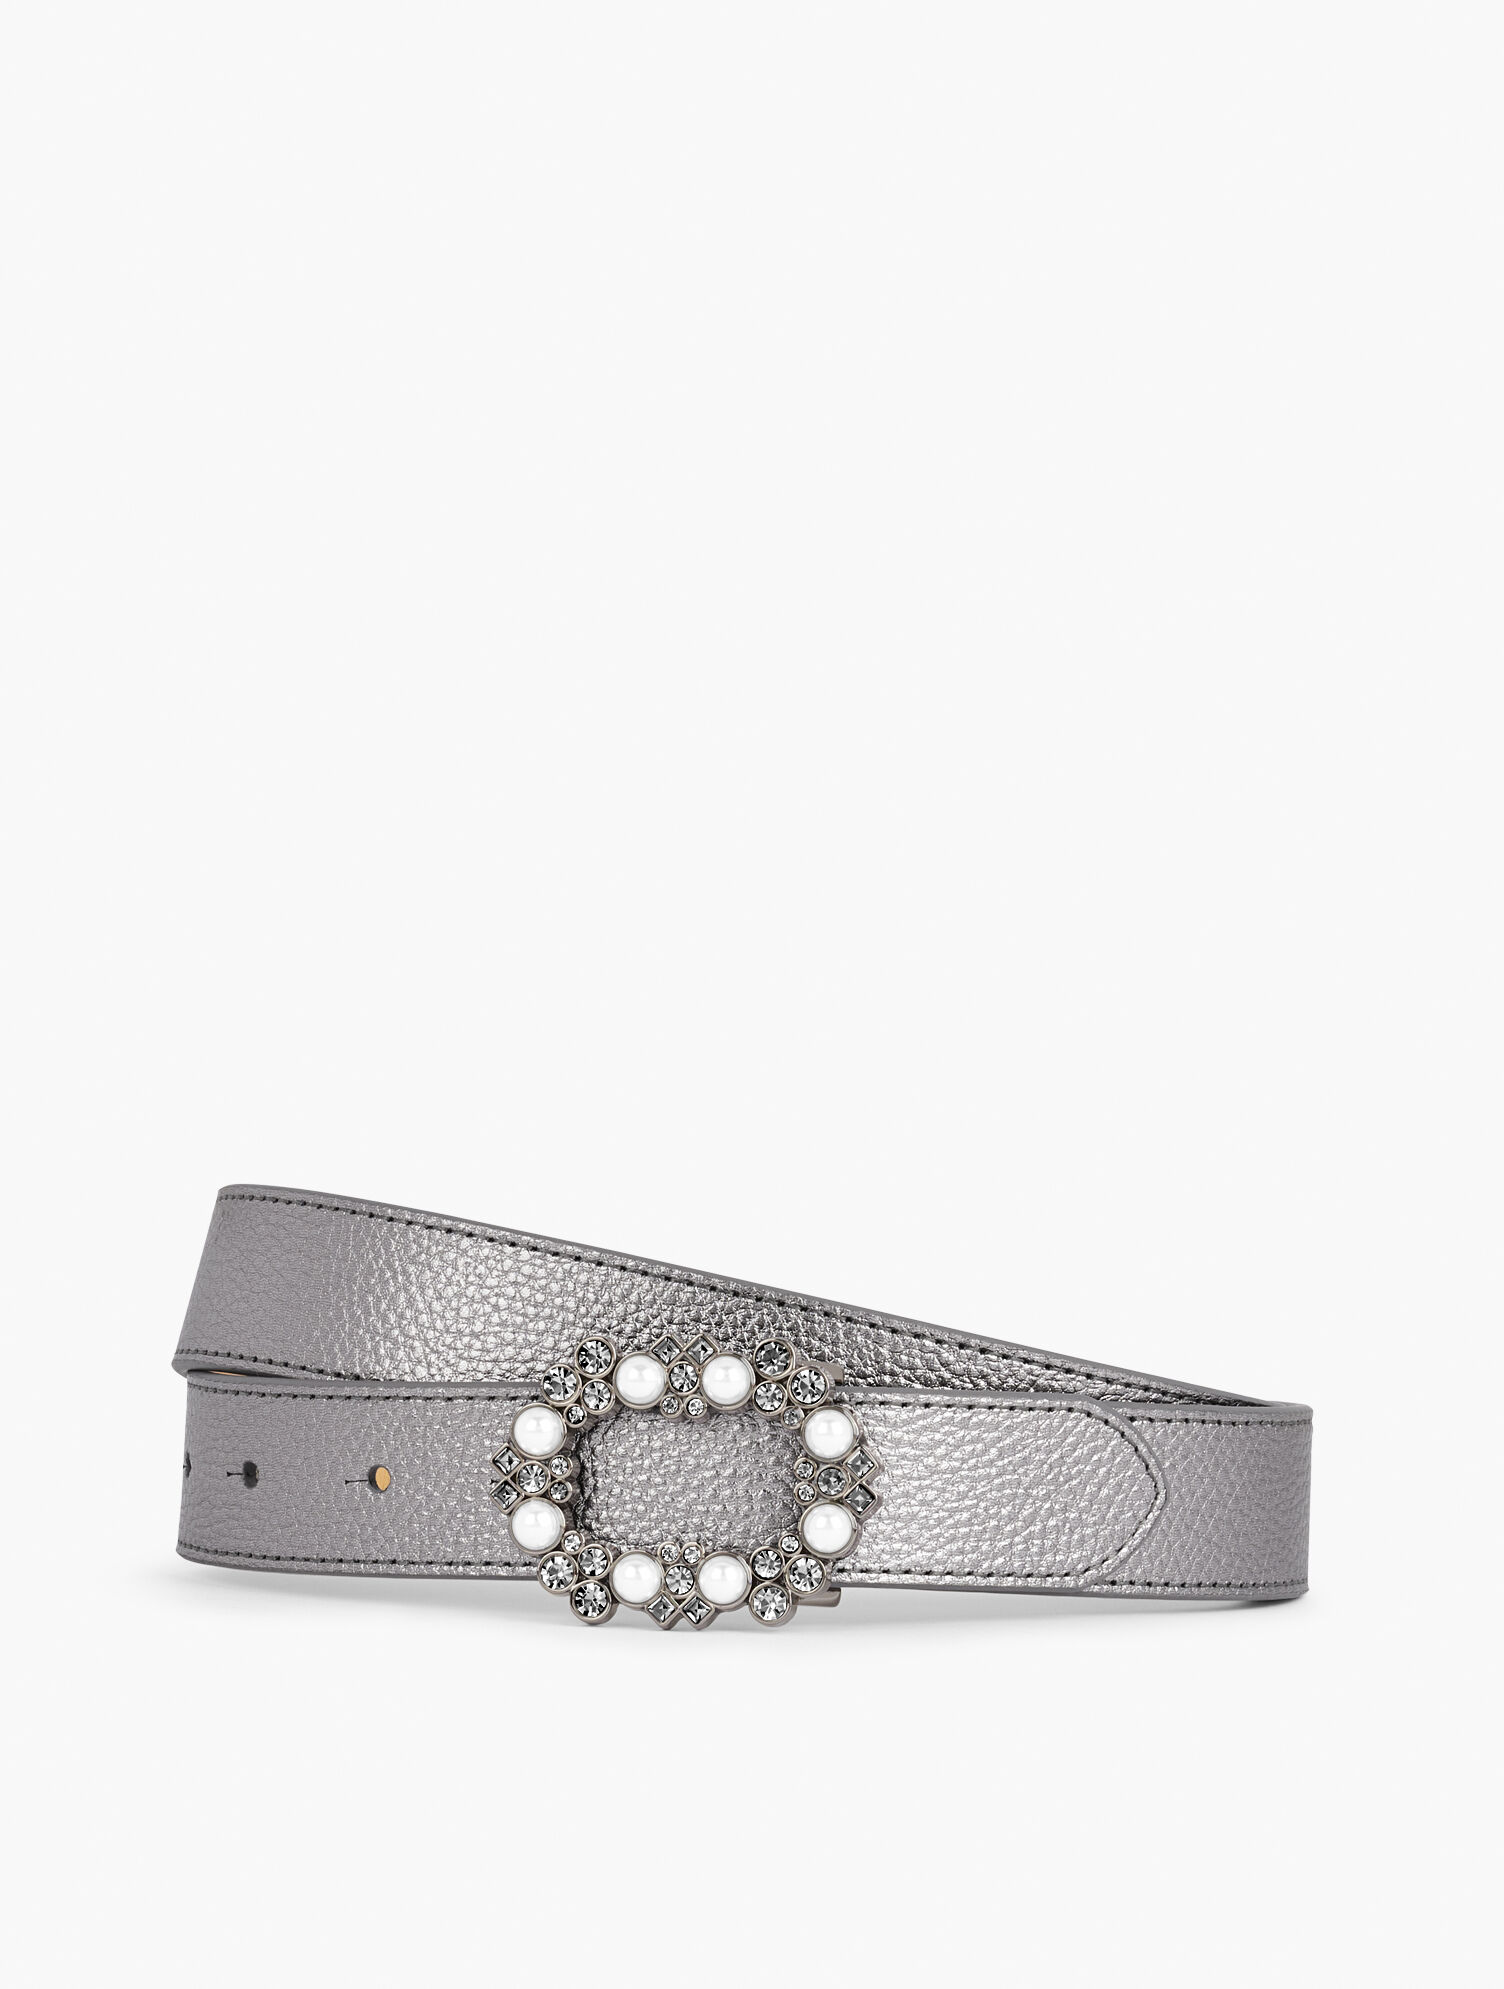 Embellished Buckle Slim Leather Belt | Talbots